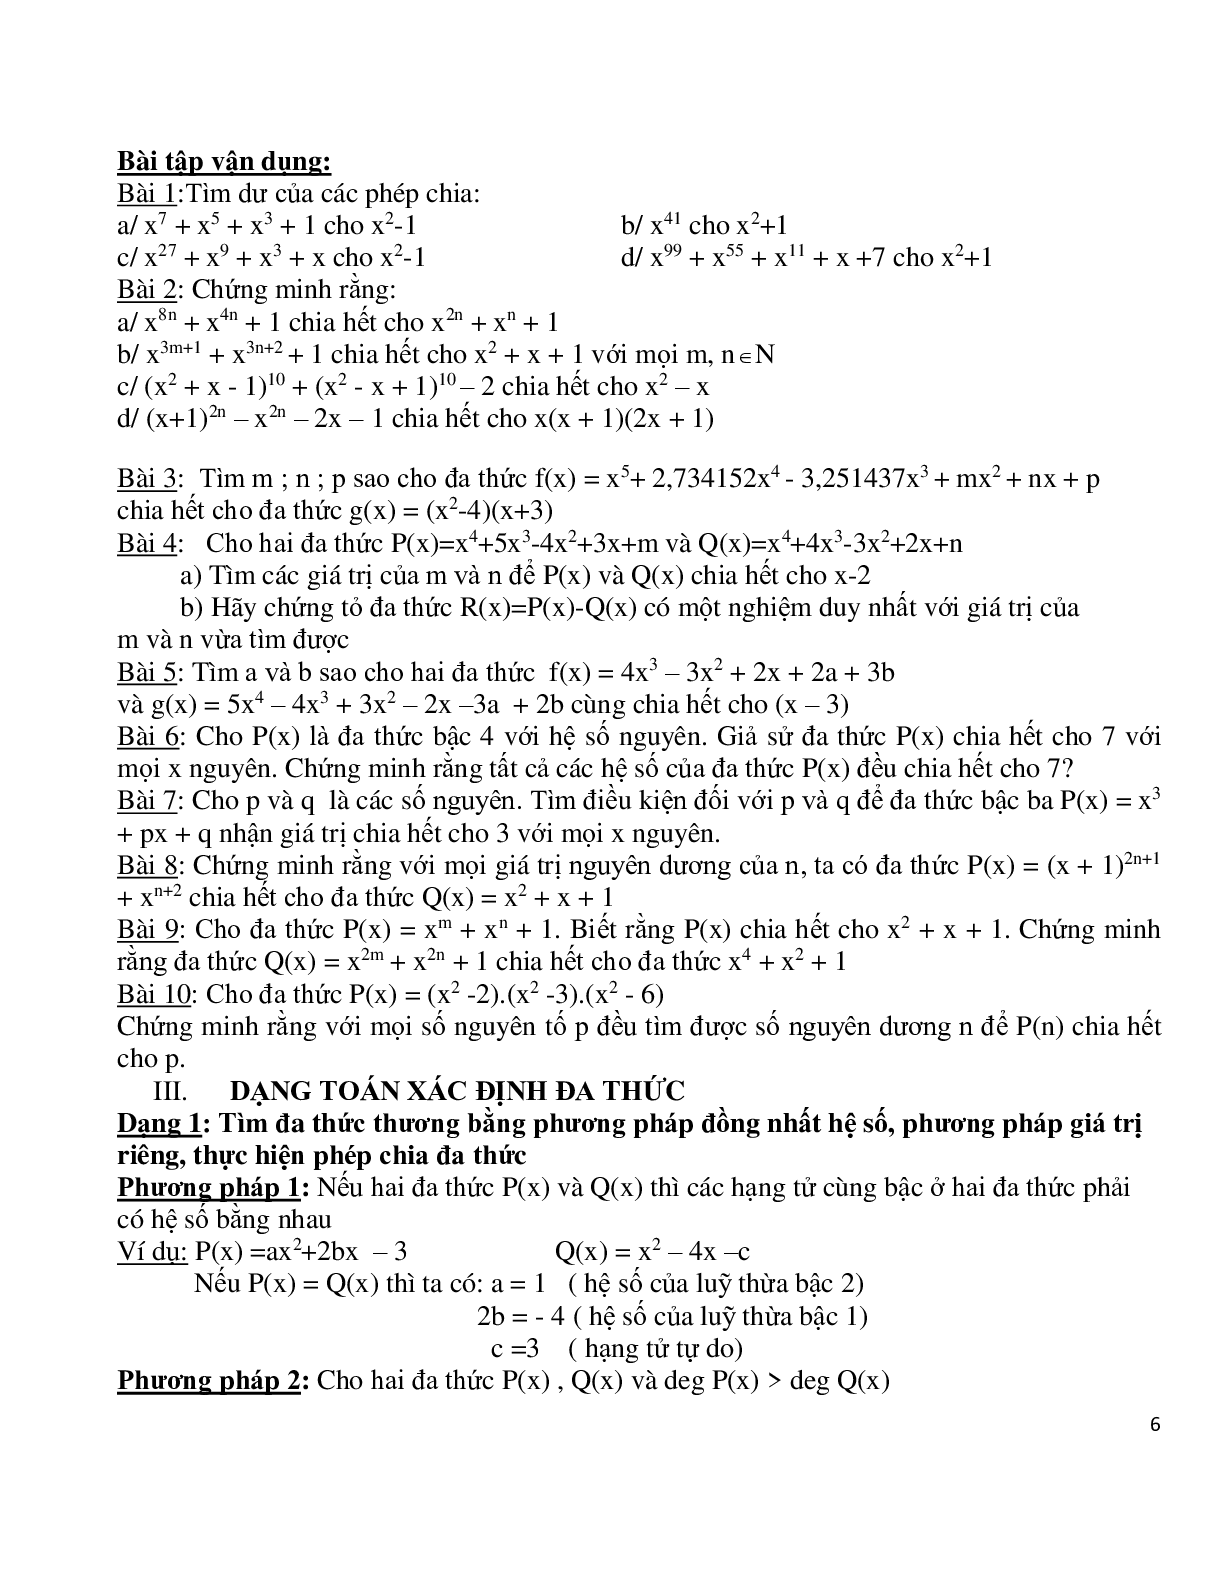 Chuyên đề bồi dưỡng học sinh giỏi toán đa thức (trang 6)